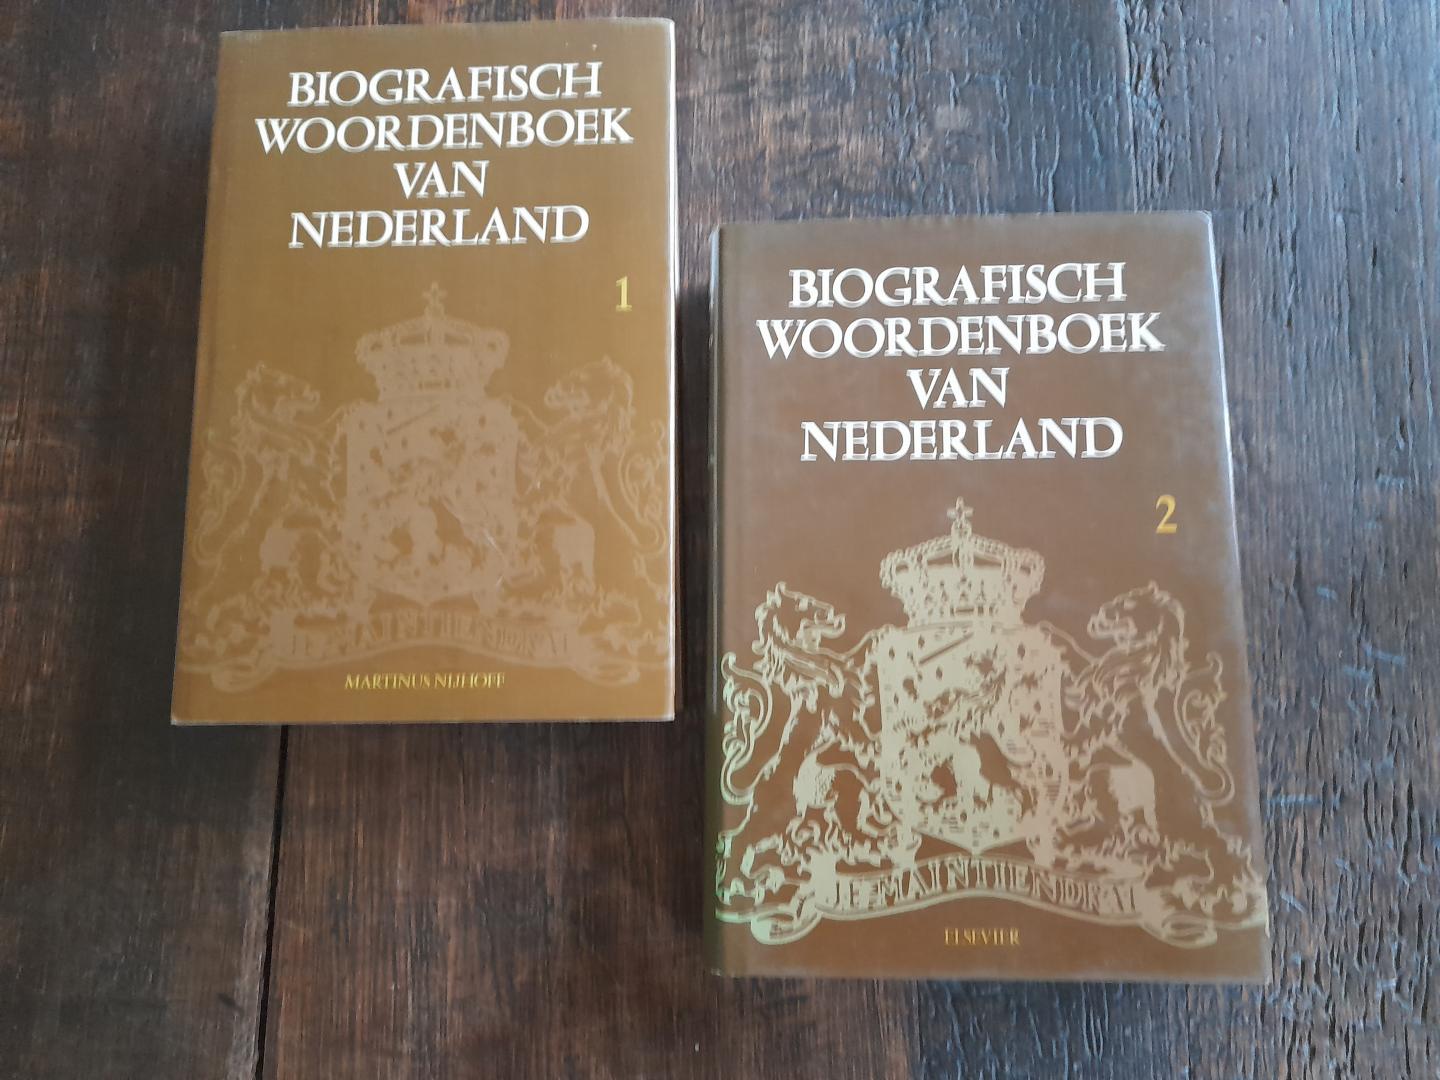 Charite, J. eindred. - Biografisch woordenboek van Nederland, Eerste en Tweede deel